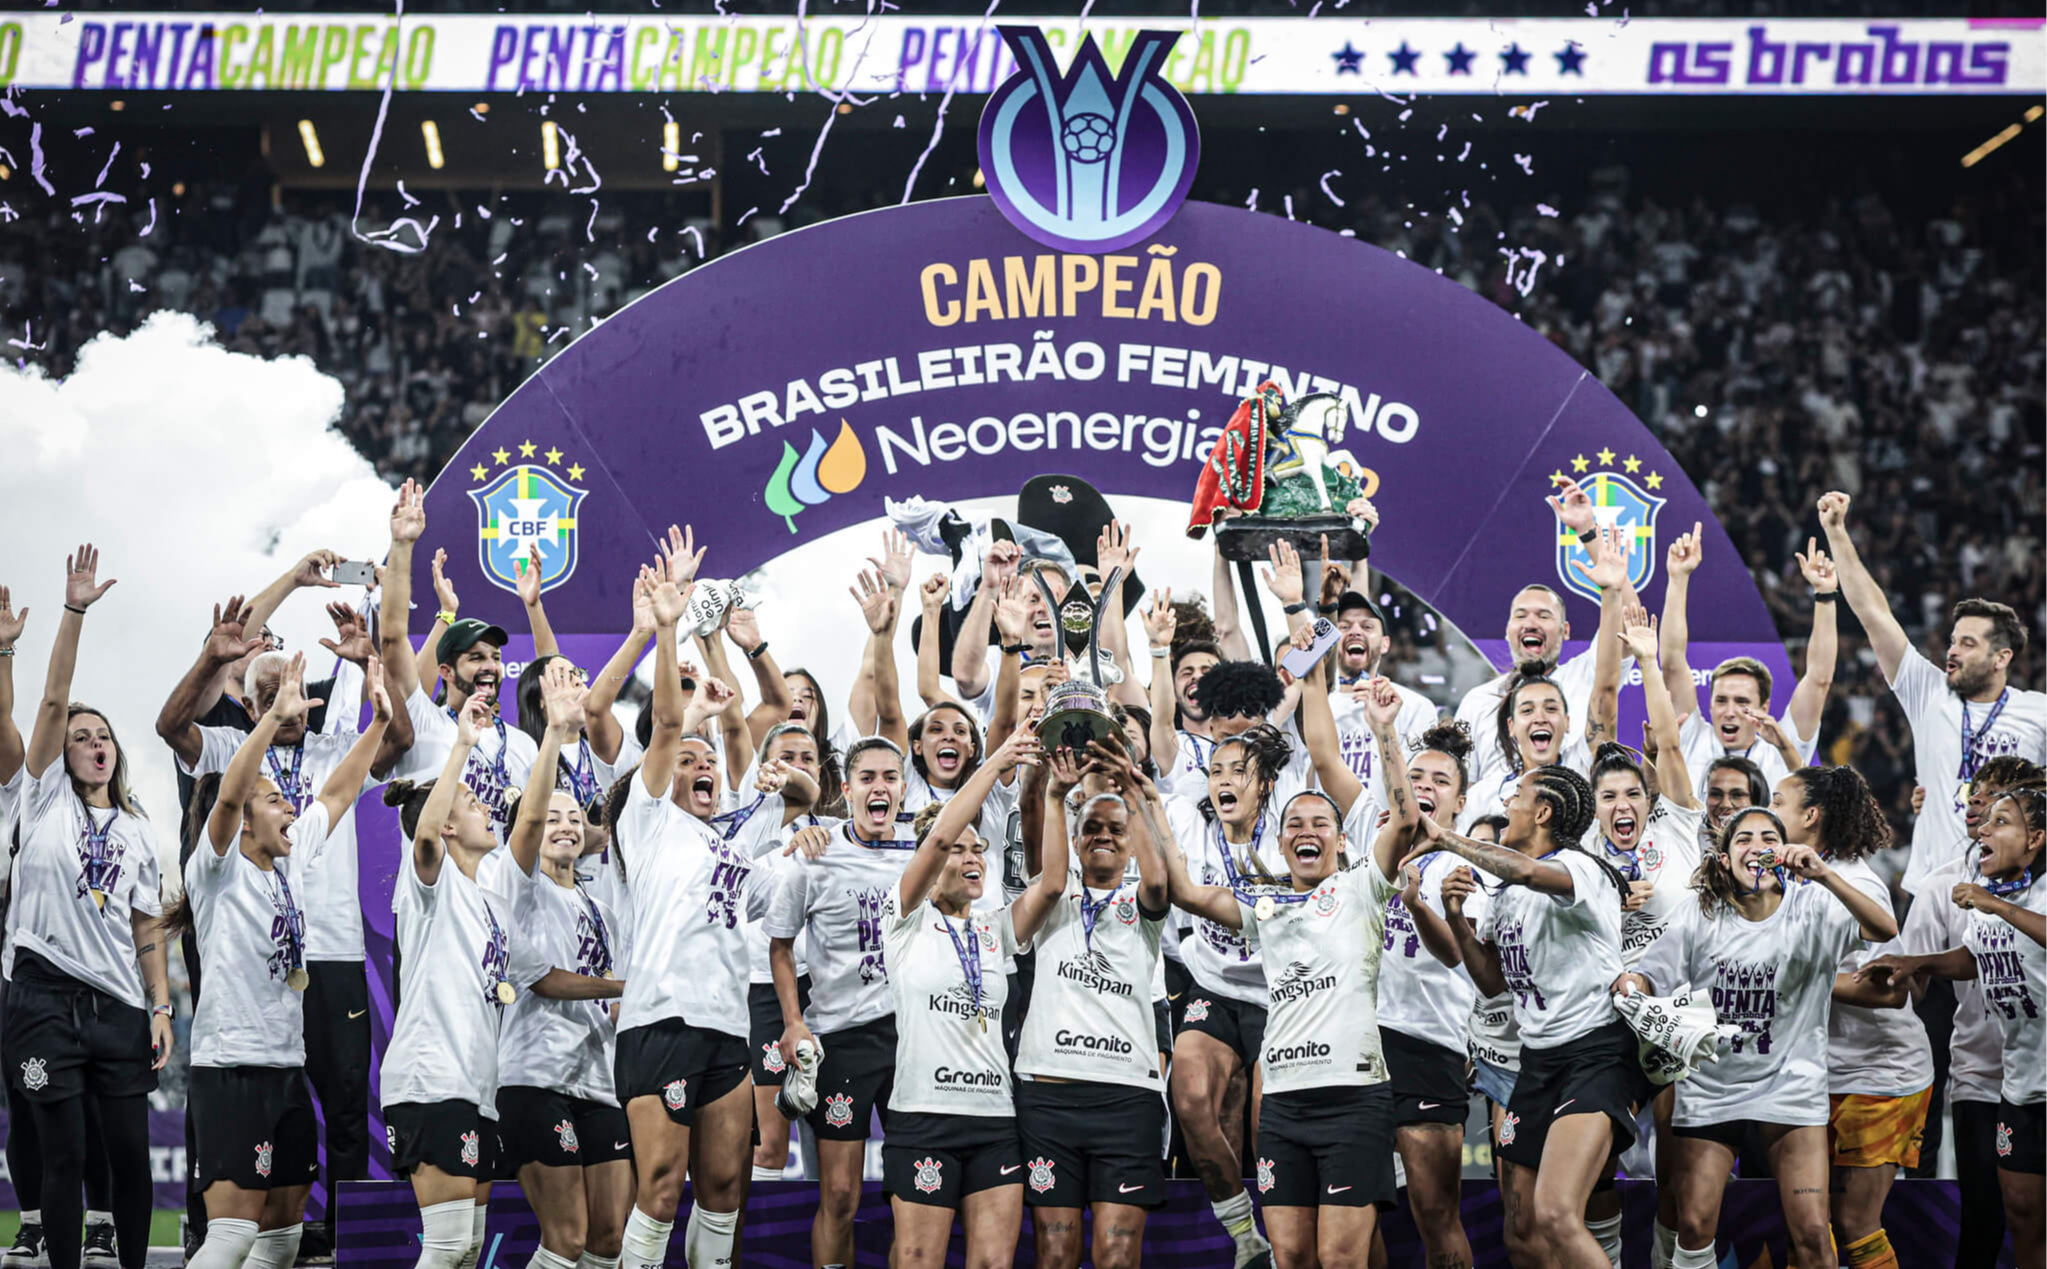 Brasileirão Feminino Neoenergia 2022 quebra recordes de público e reforça  valorização do esporte no país - Neoenergia